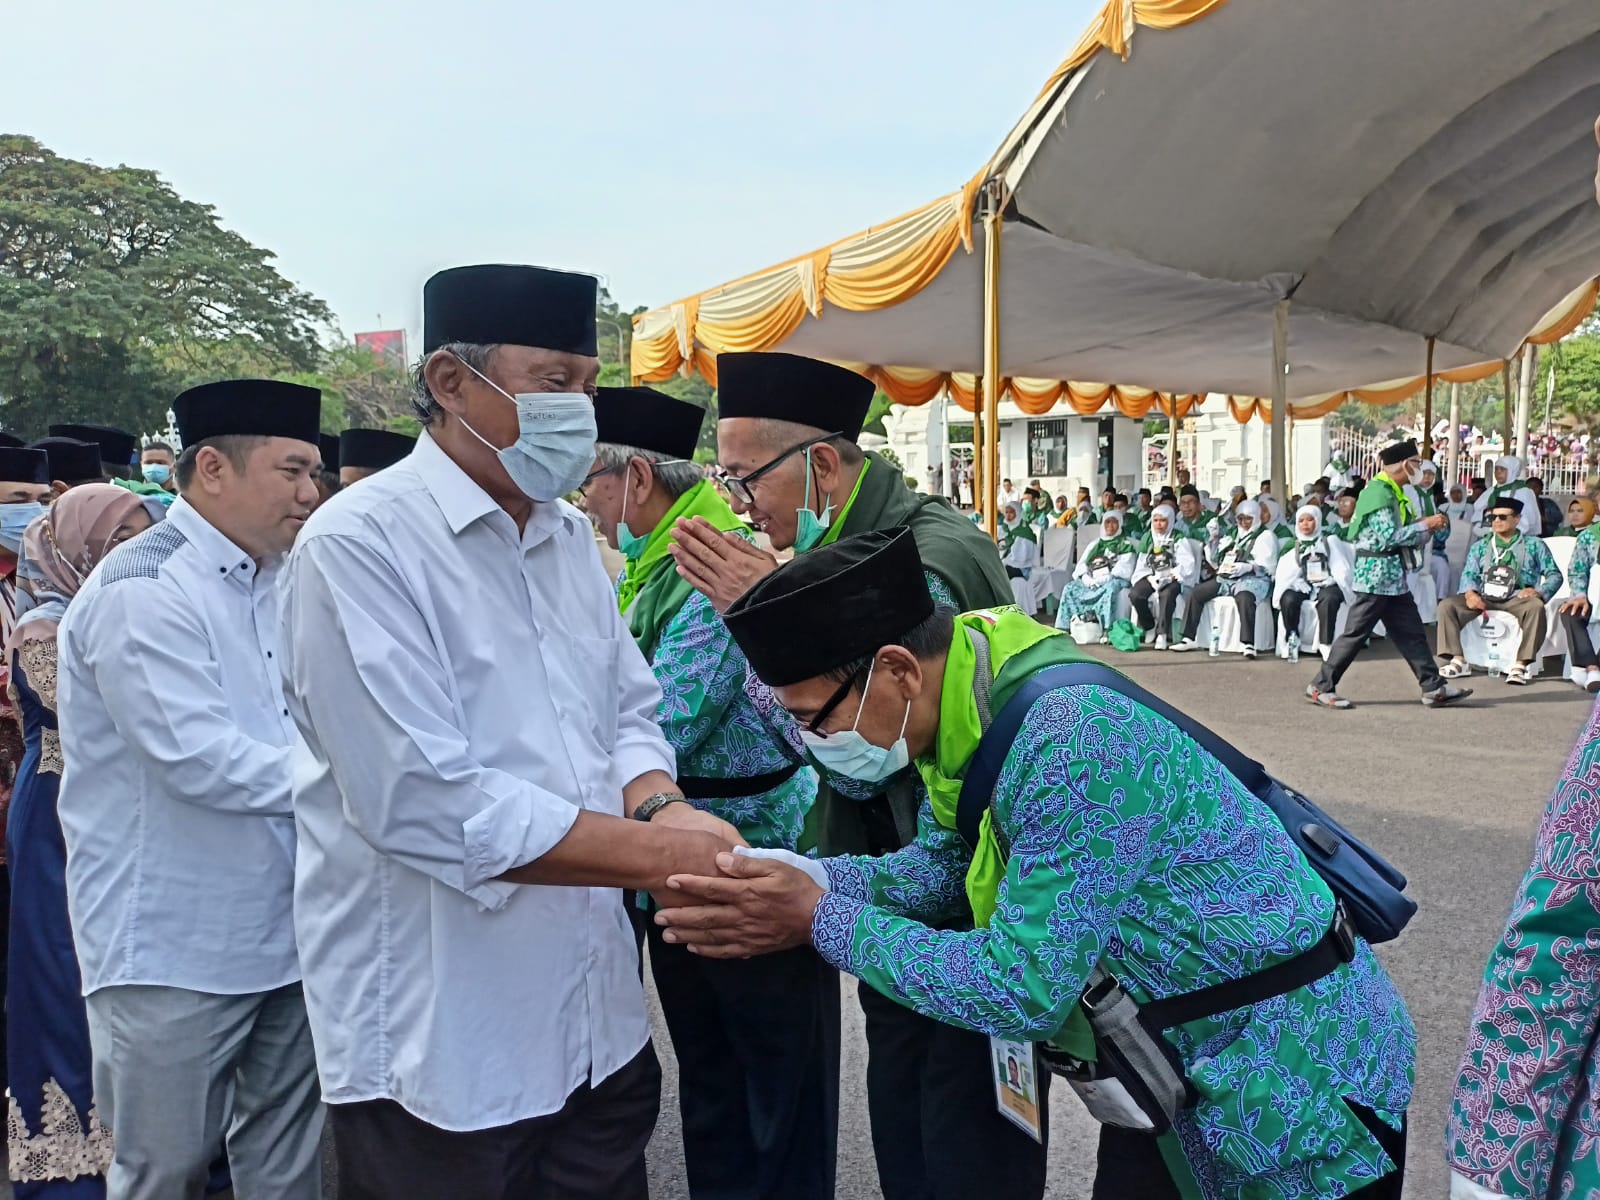 206 Jemaah Haji Asal Kabupaten Serang Dilepas di Pendopo Bupati